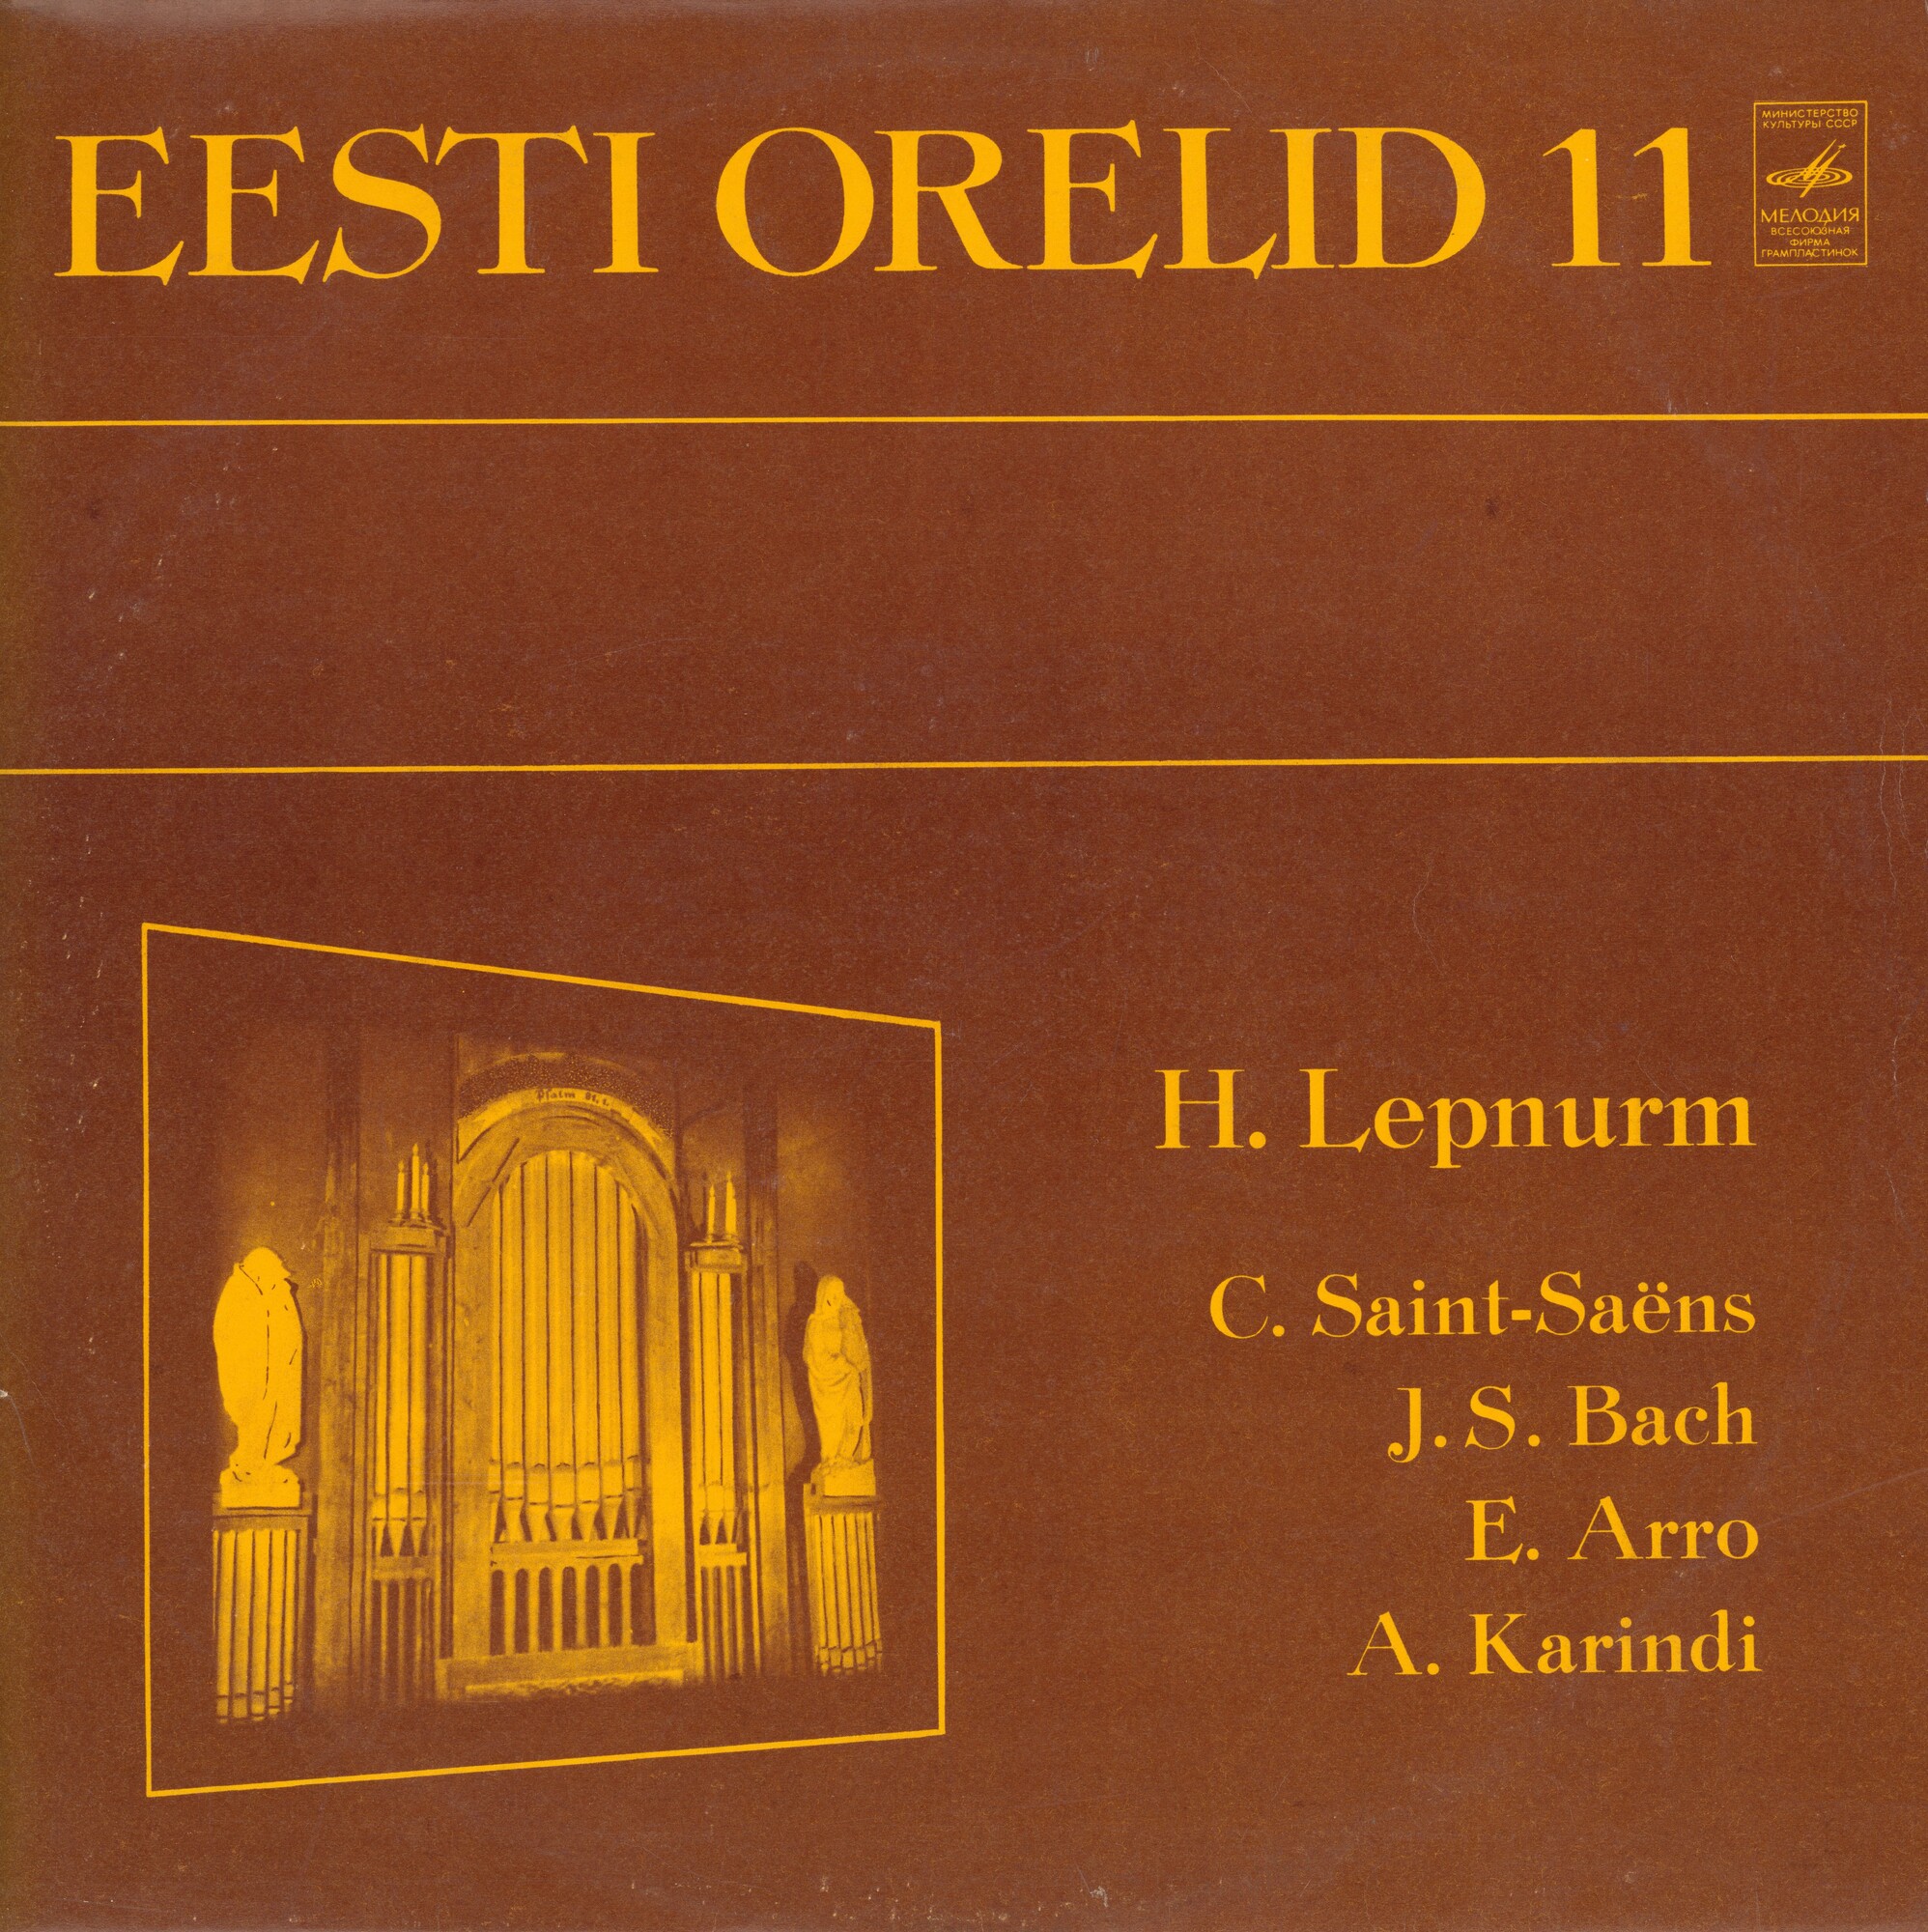 ОРГАНЫ ЭСТОНИИ-11 (Eesti orelid 11) - Хуго Лепнурм